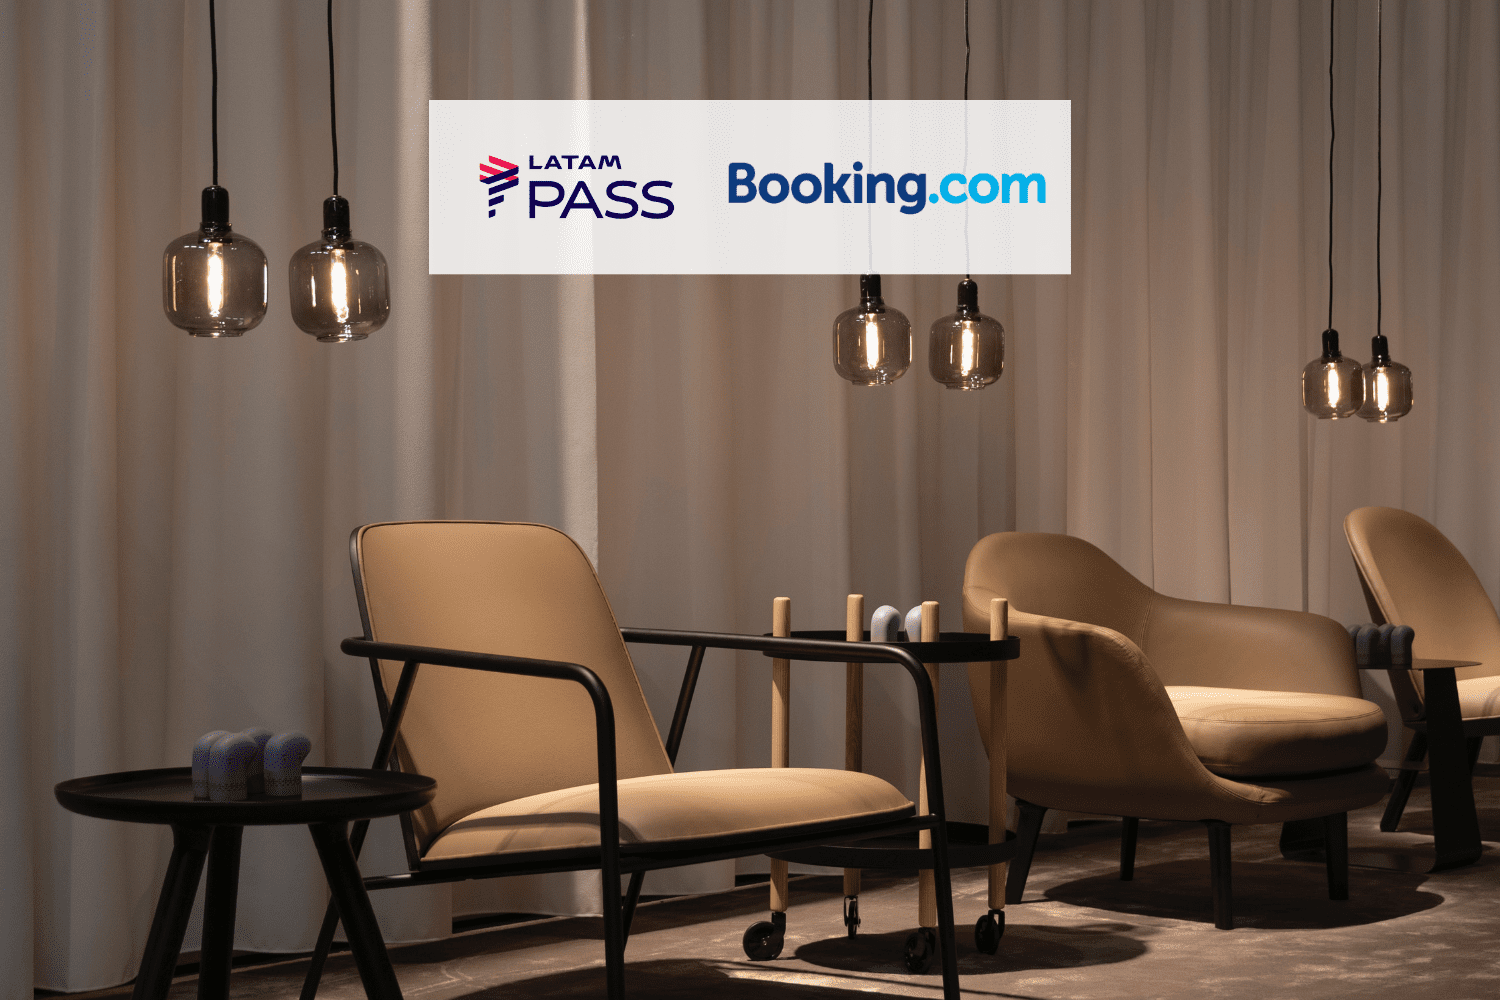 Recepção de hotel com logo Latam Pass e Booking 16 pontos Latam Pass